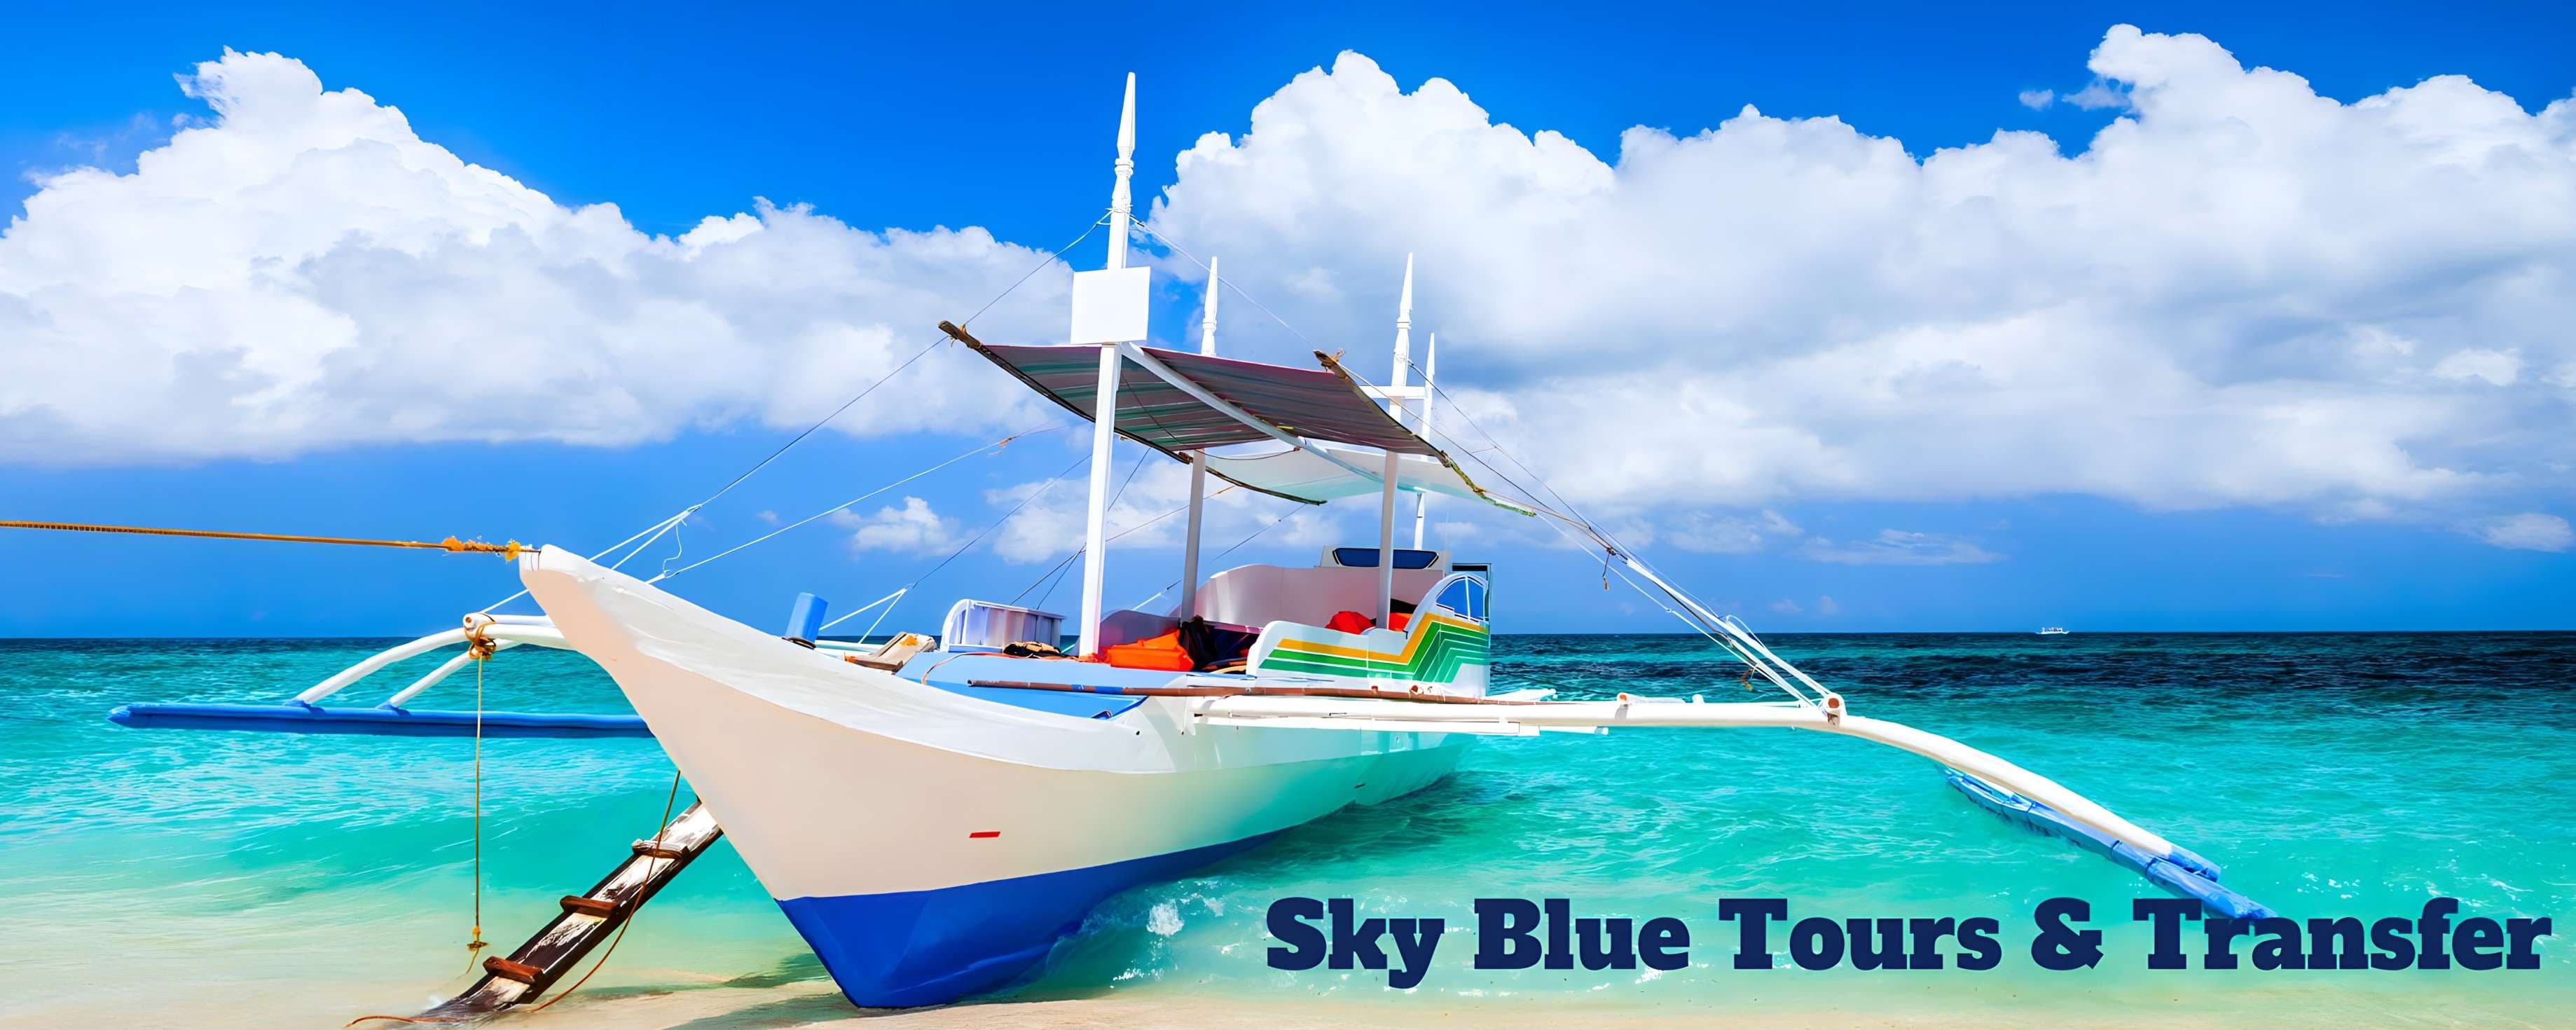 Sky Blue Tours & Transfer